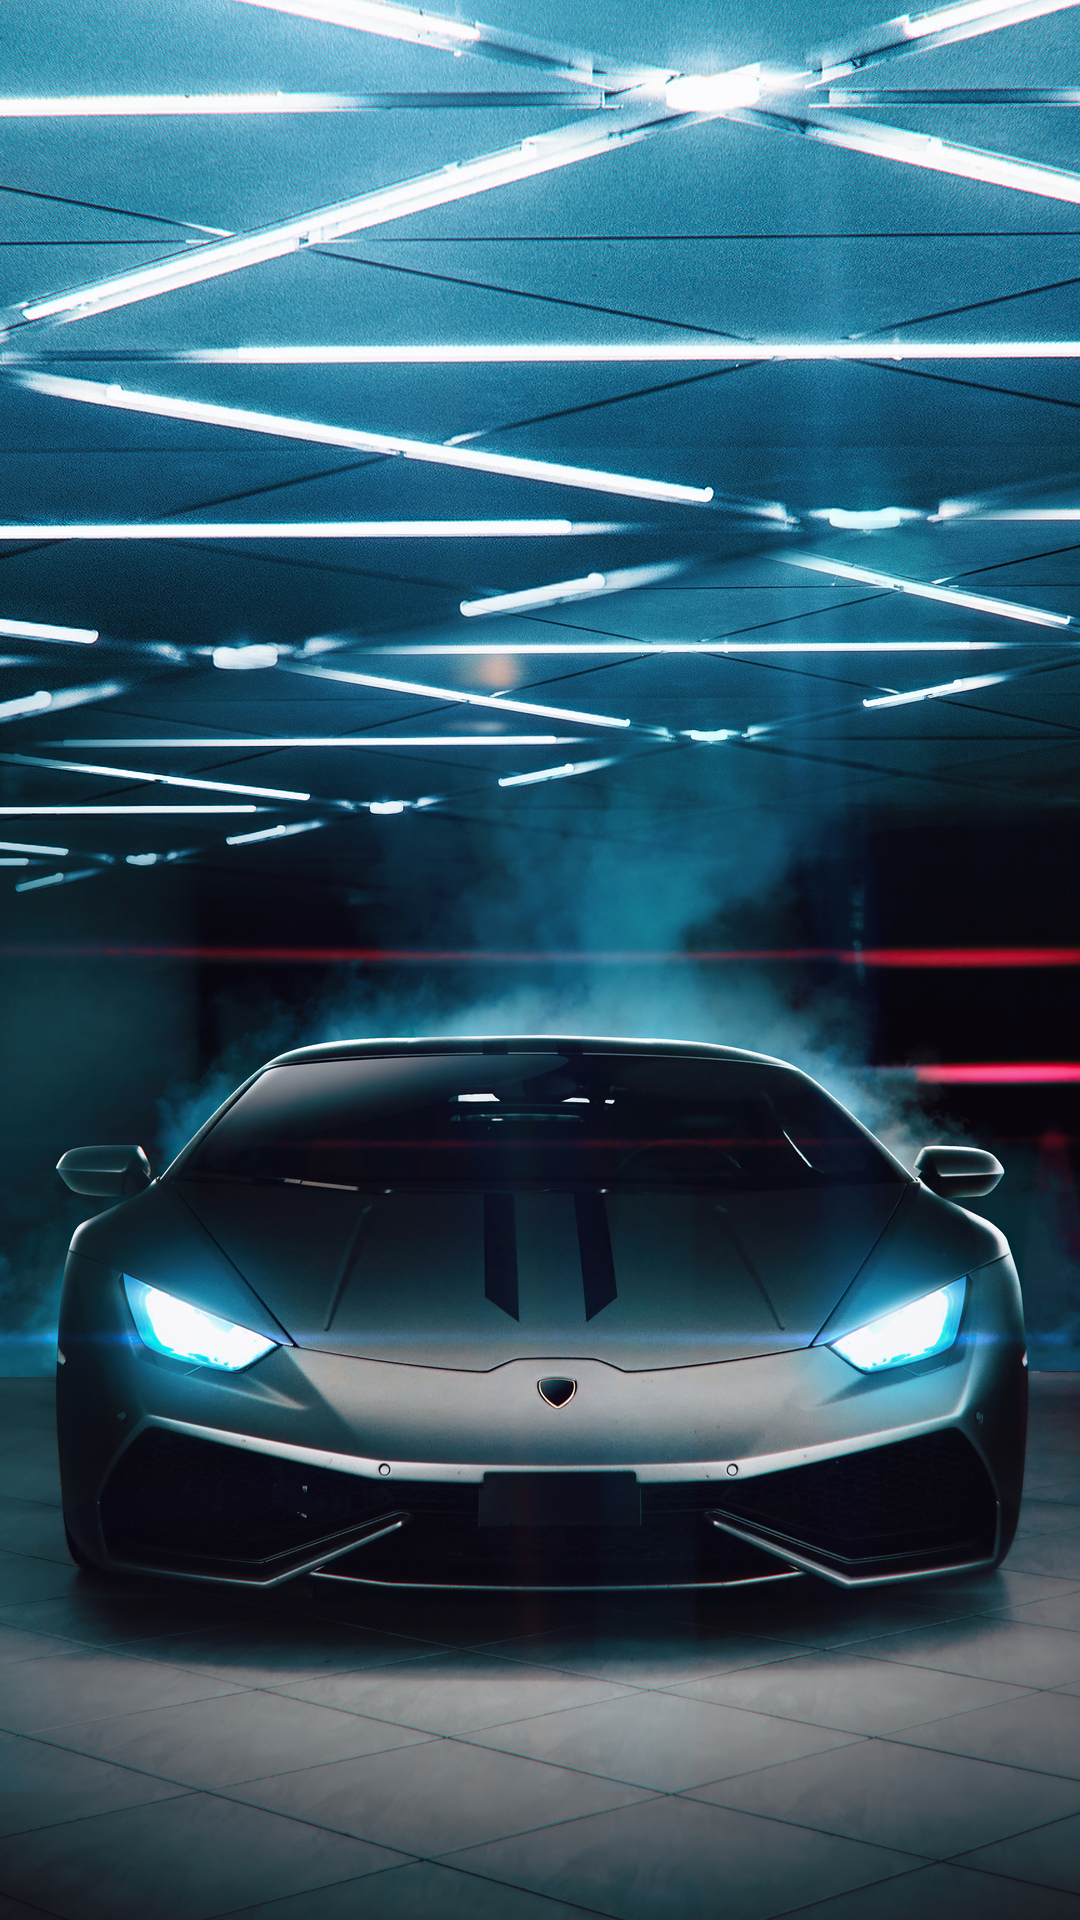 Lamborghini – biểu tượng về sự mạnh mẽ, sang trọng và tinh tế. Nếu bạn muốn tận hưởng cảm giác lịch lãm của những chiếc xe hơi đỉnh cao này, hãy tải ngay những hình nền Lamborghini độc đáo, tuyệt đẹp nhất. Bạn sẽ không hối hận vì những khoảnh khắc thăng hoa đang đợi bạn ở phía trước.